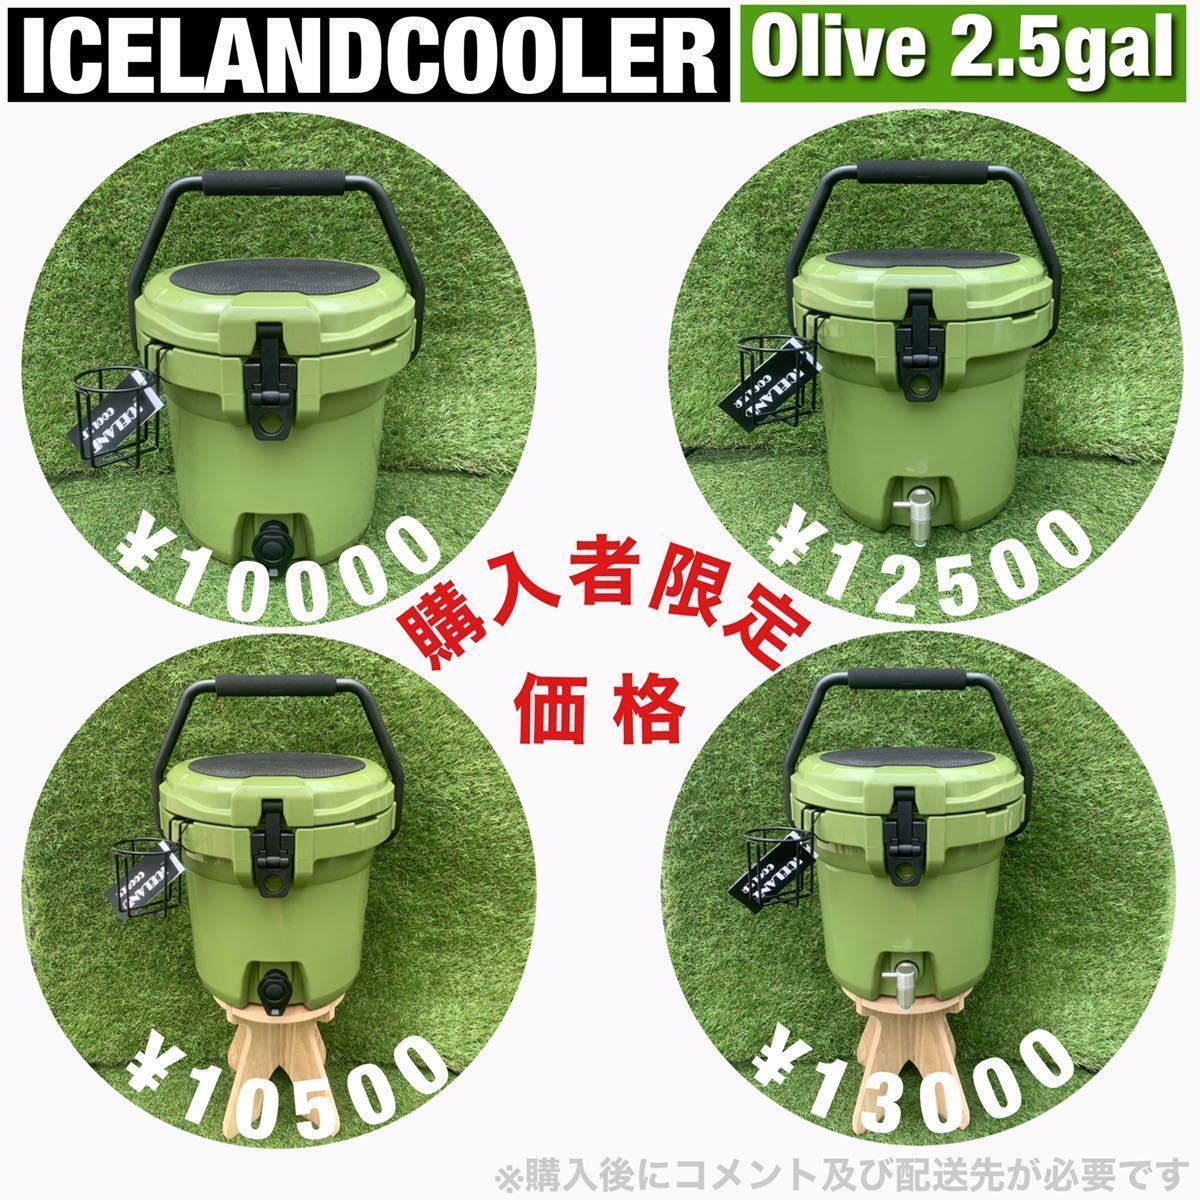 New ICELAND COOLER アイスランドクーラーボックス 45QT 期間限定セール　購入特典付き　デザートカモフラージュ